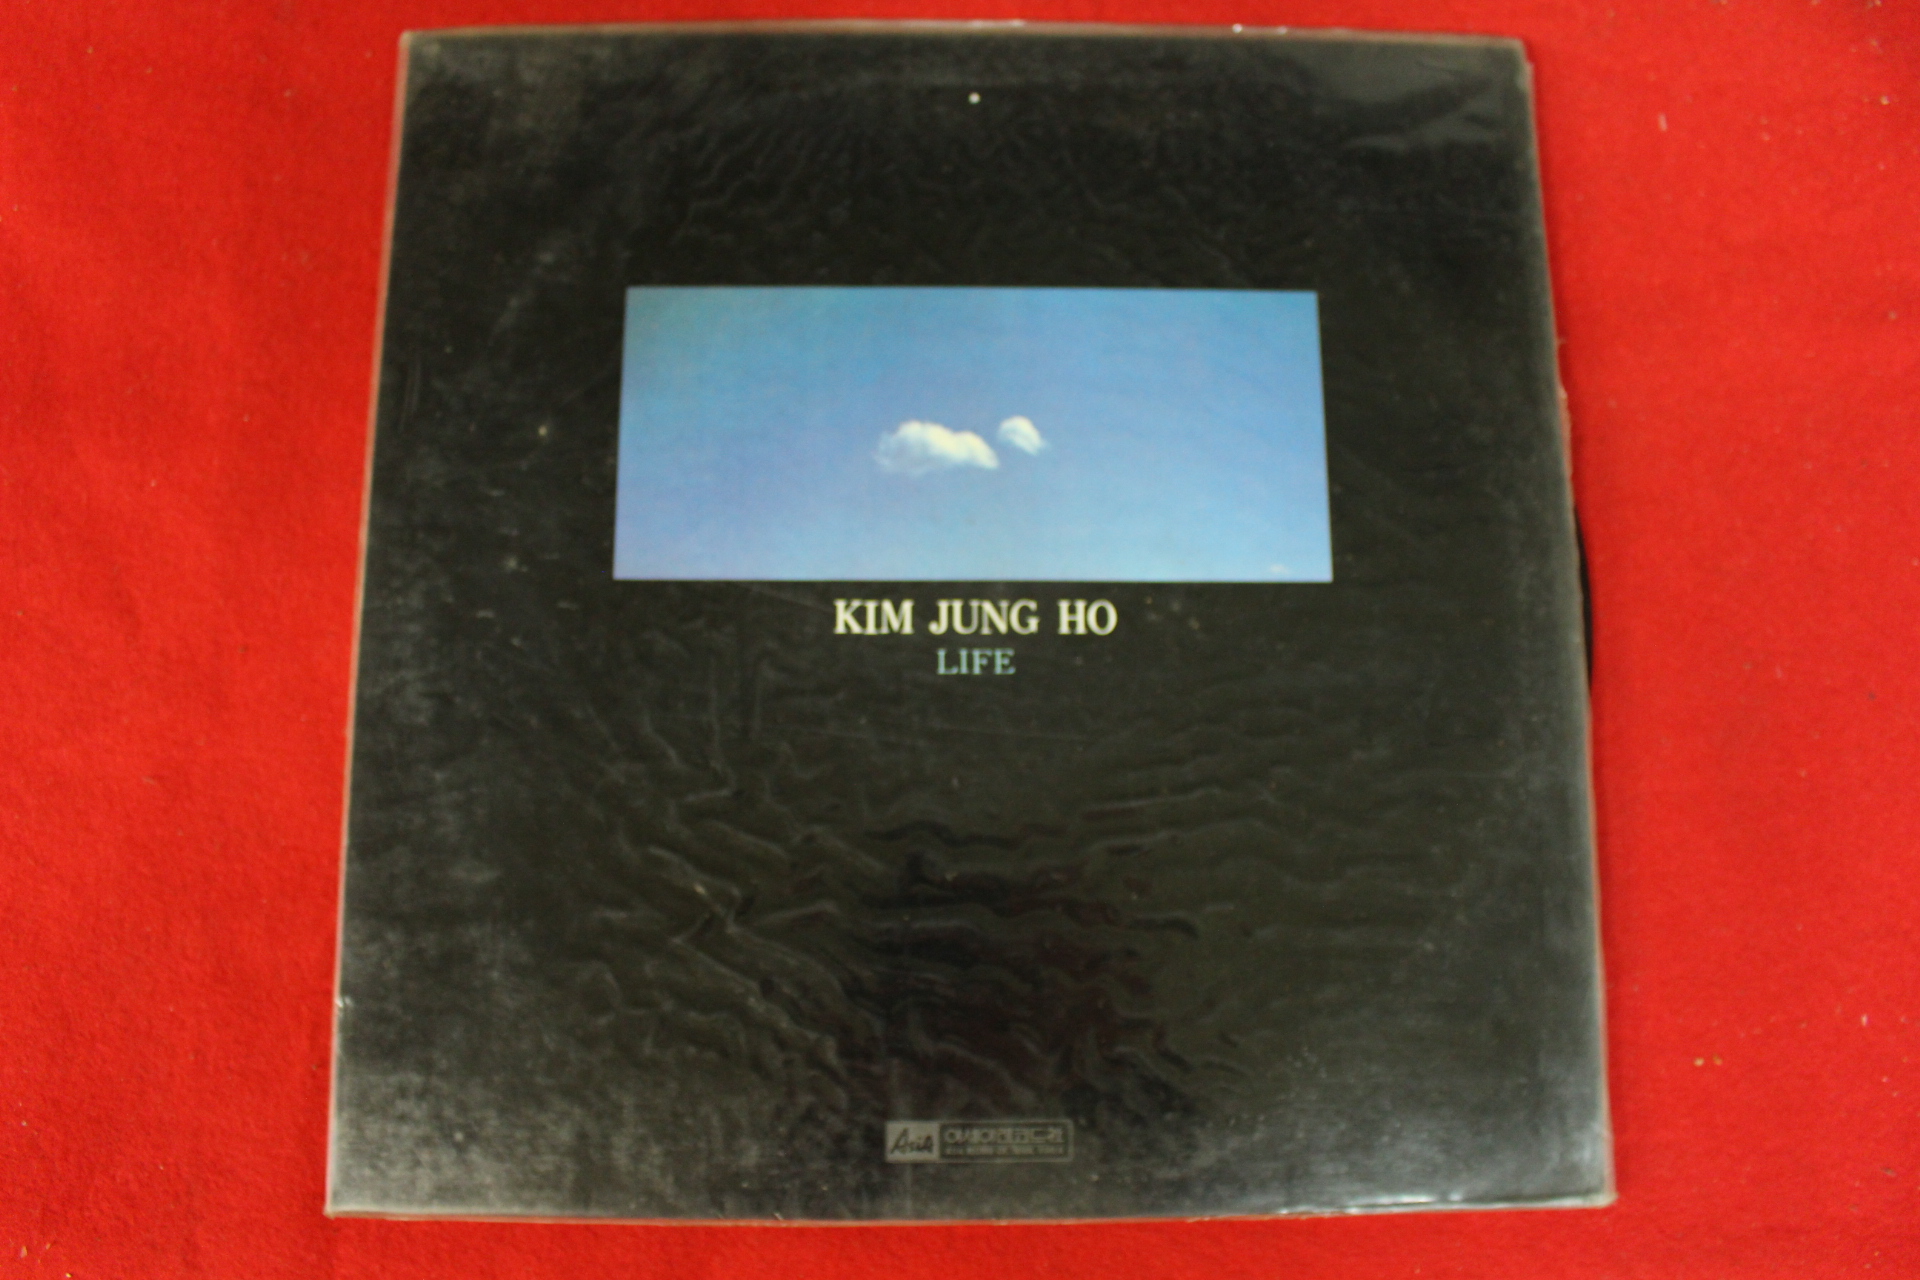 420-1983년 레코드판 김정호